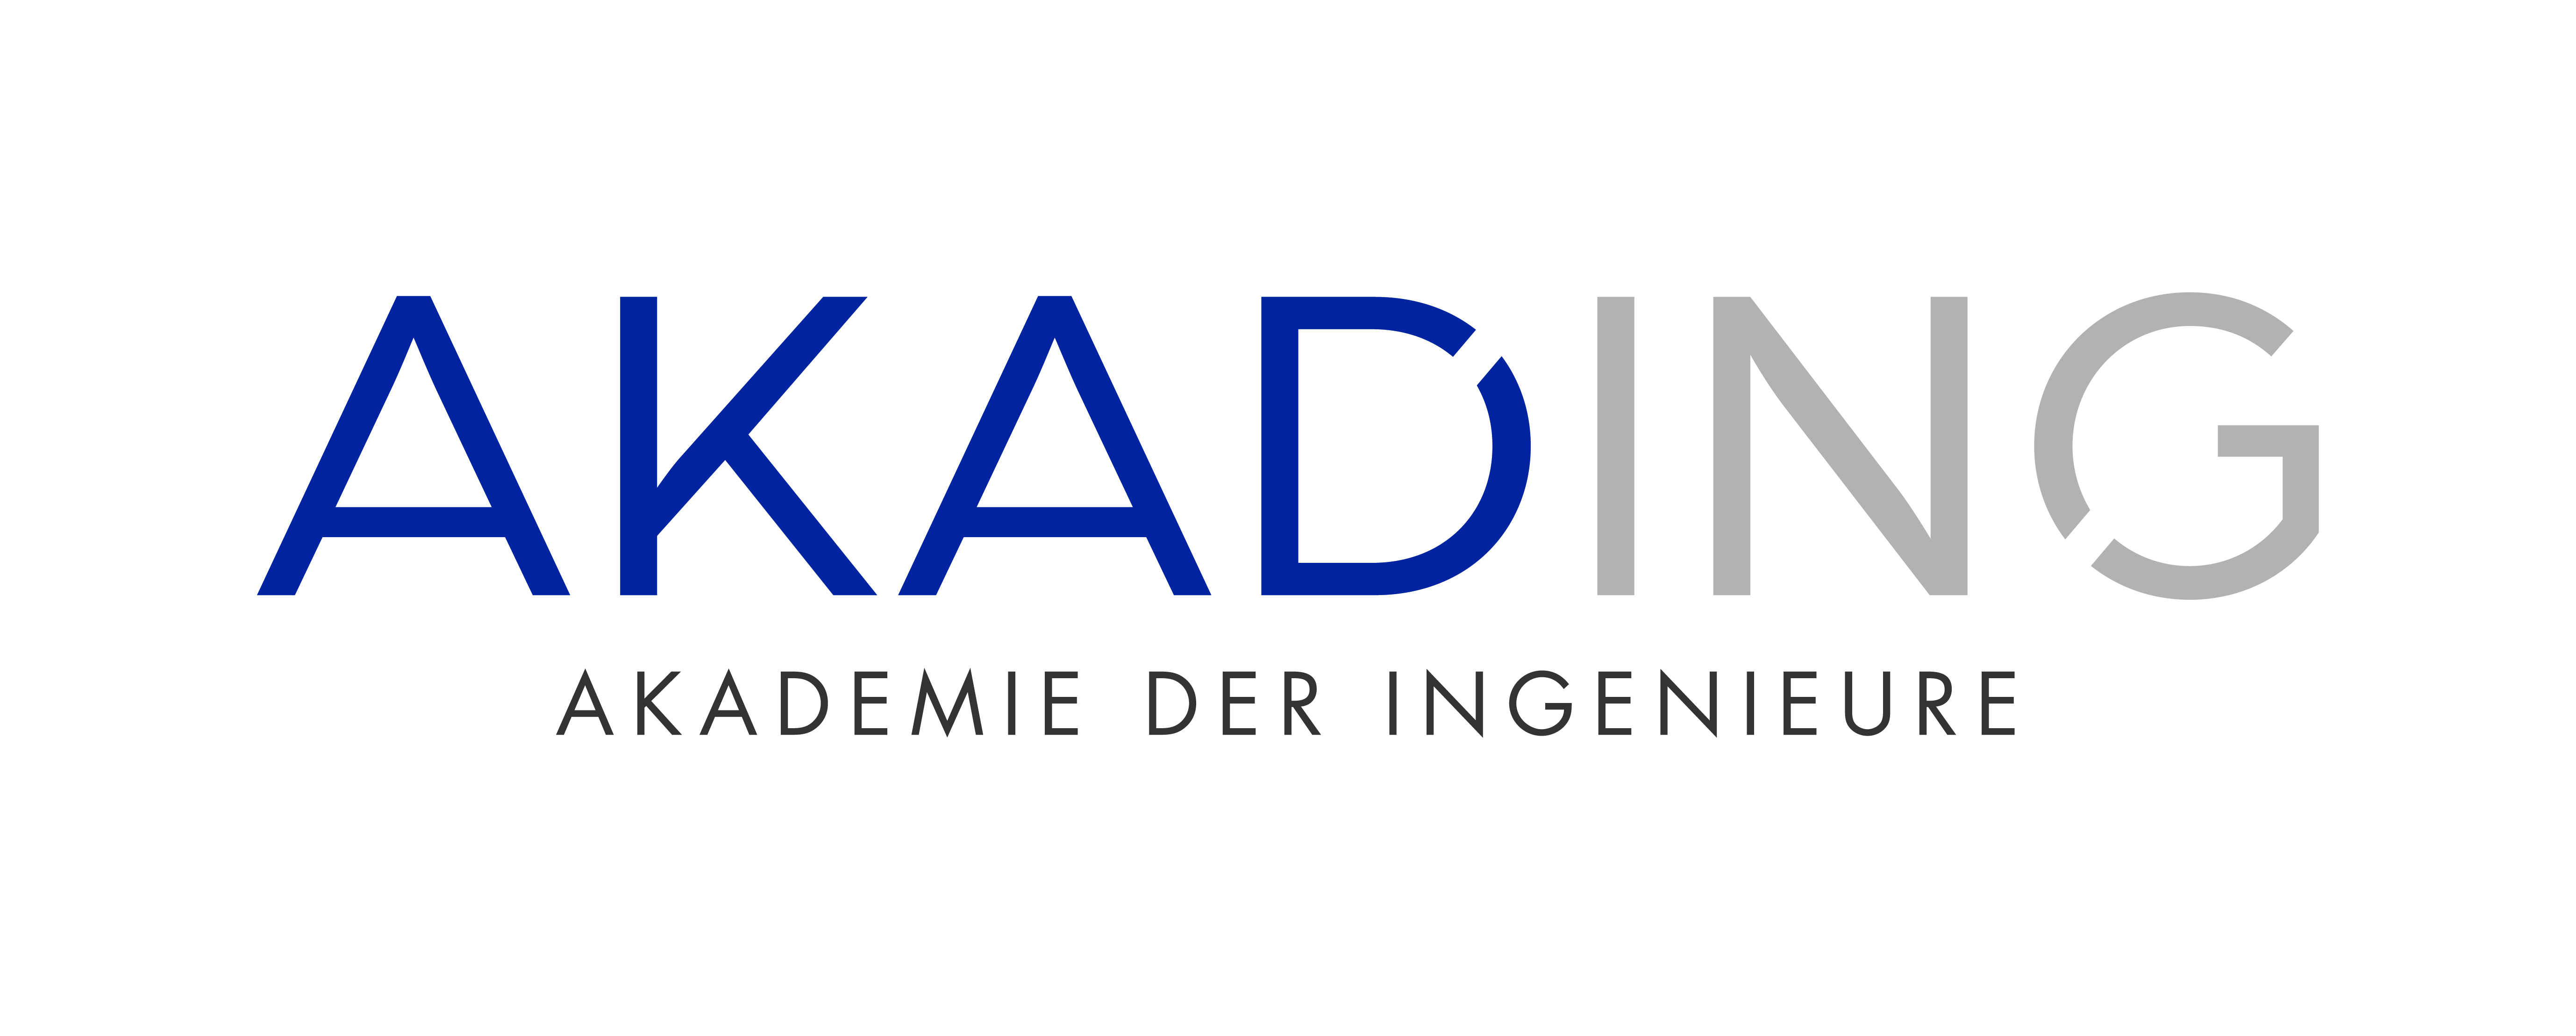 Akademie der Ingenieure AkadIng GmbH